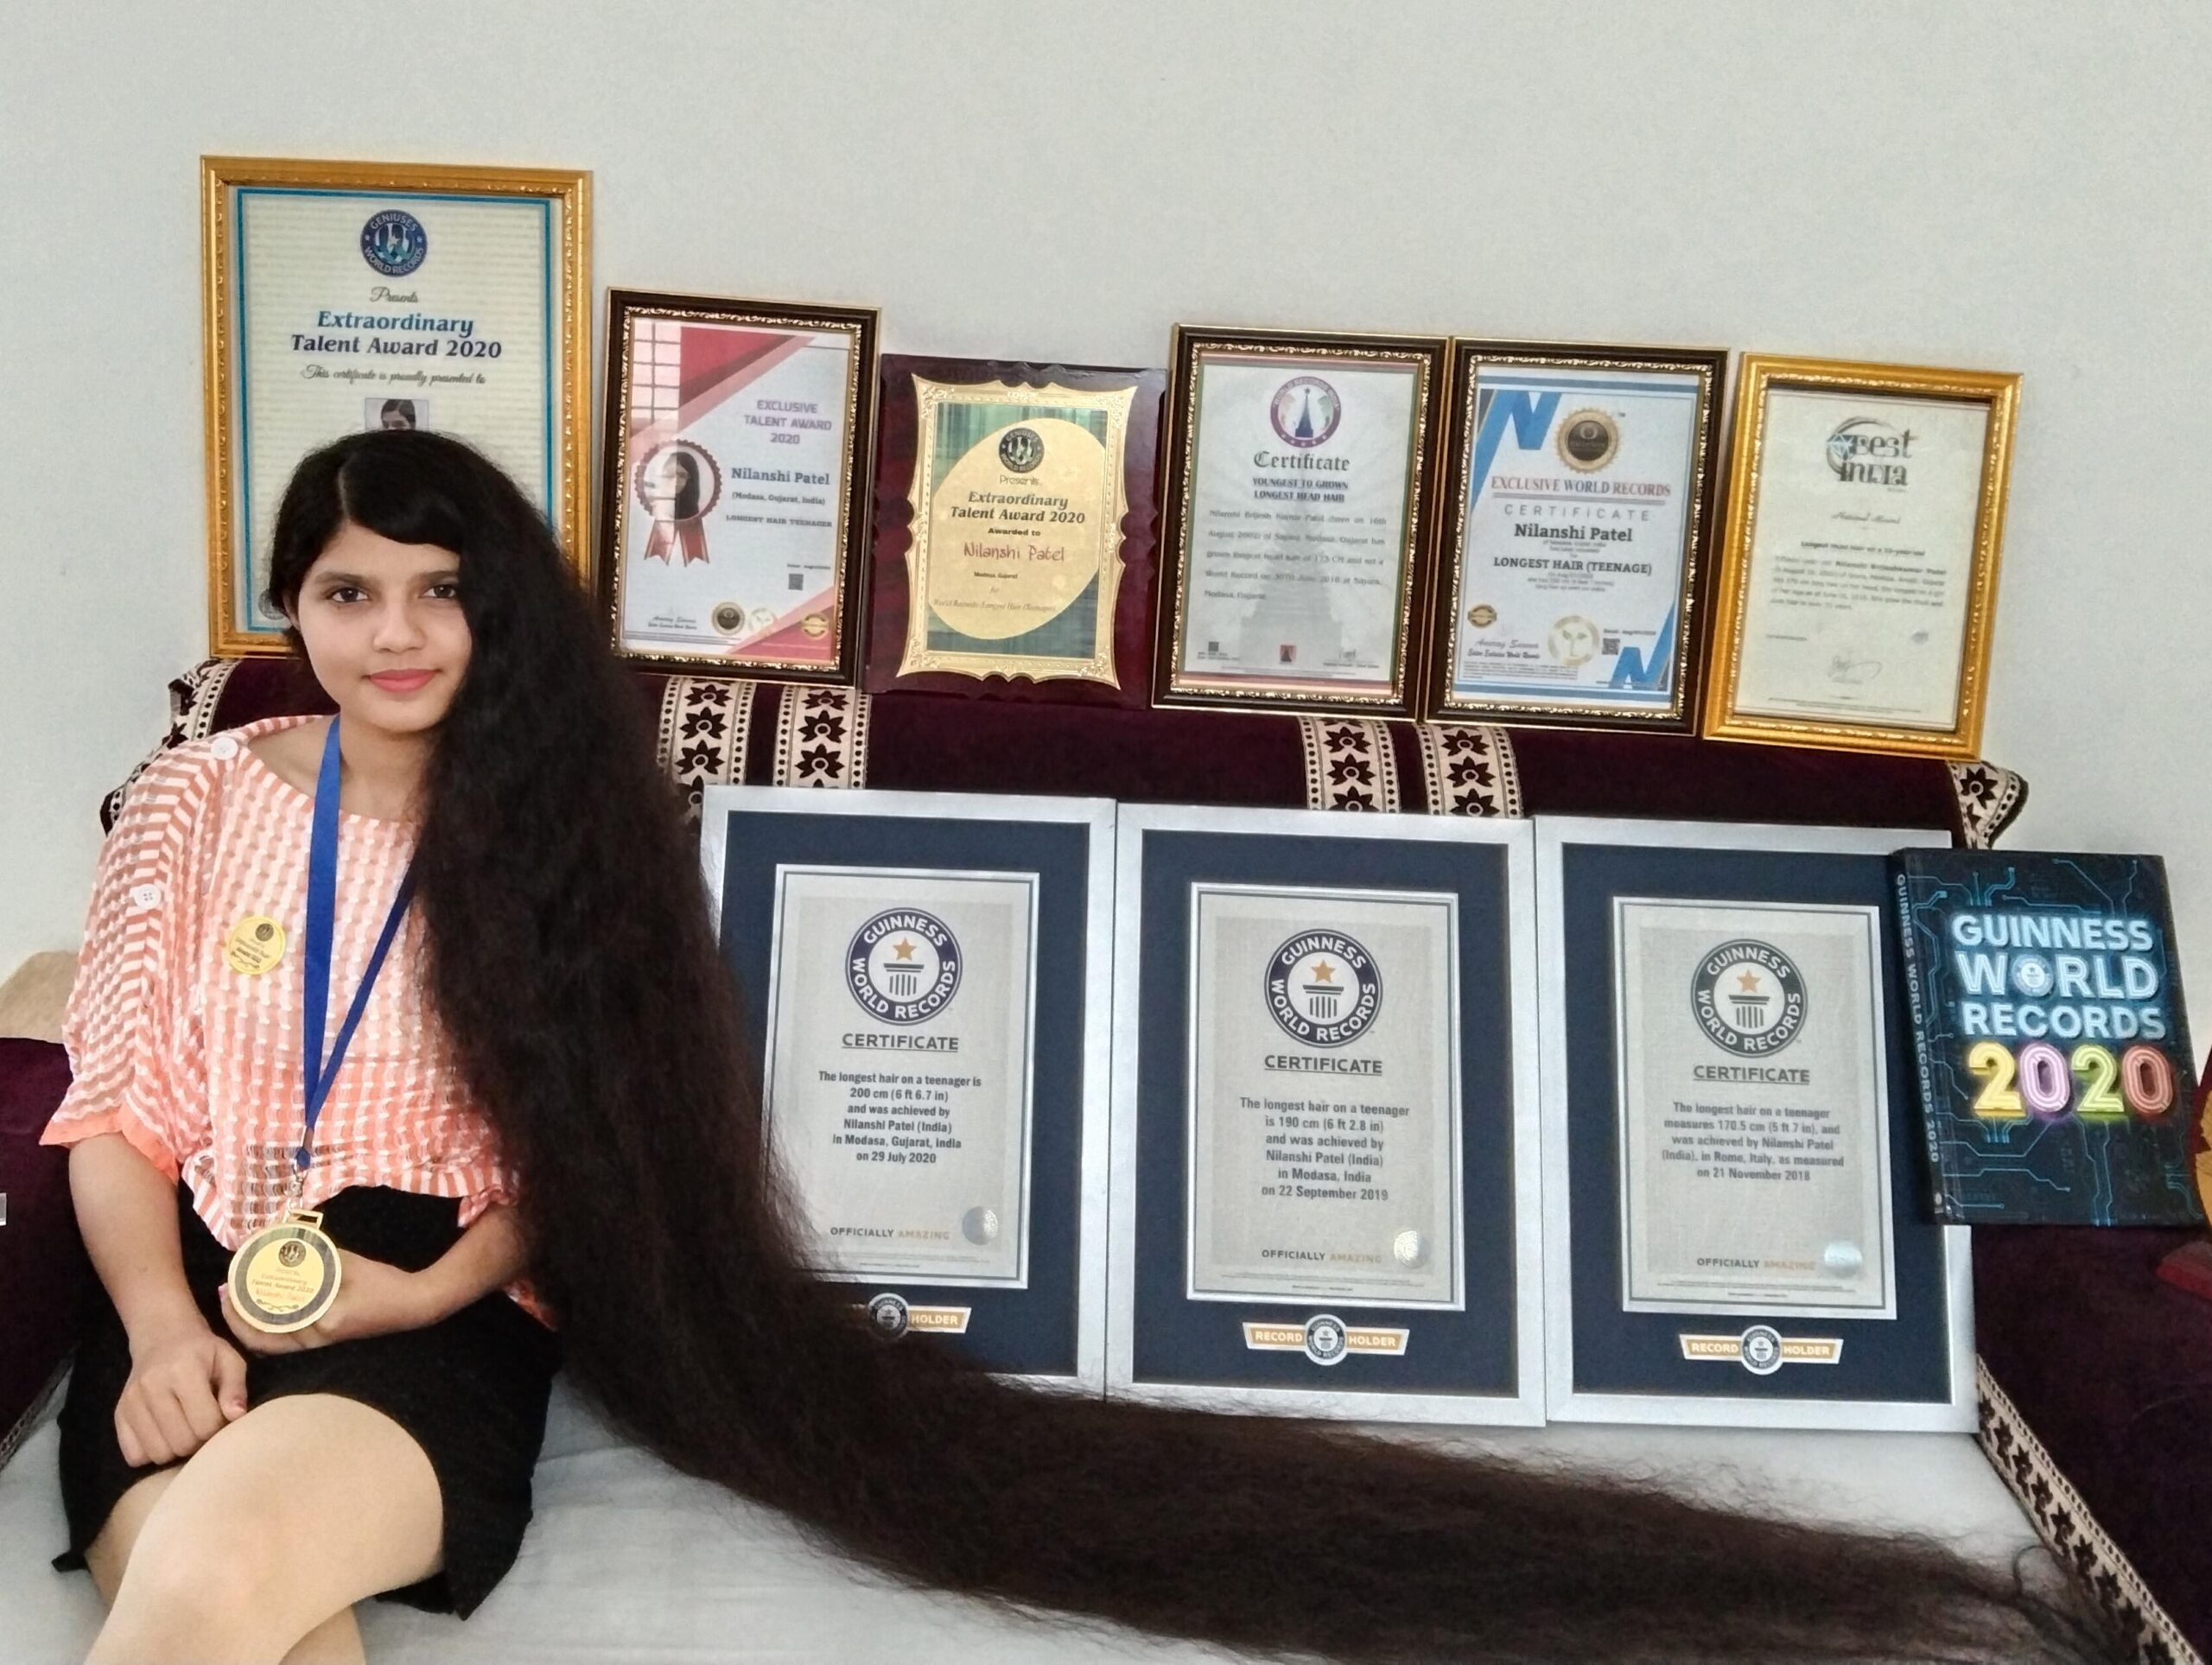 Nilanshi Patel Guinness World Record